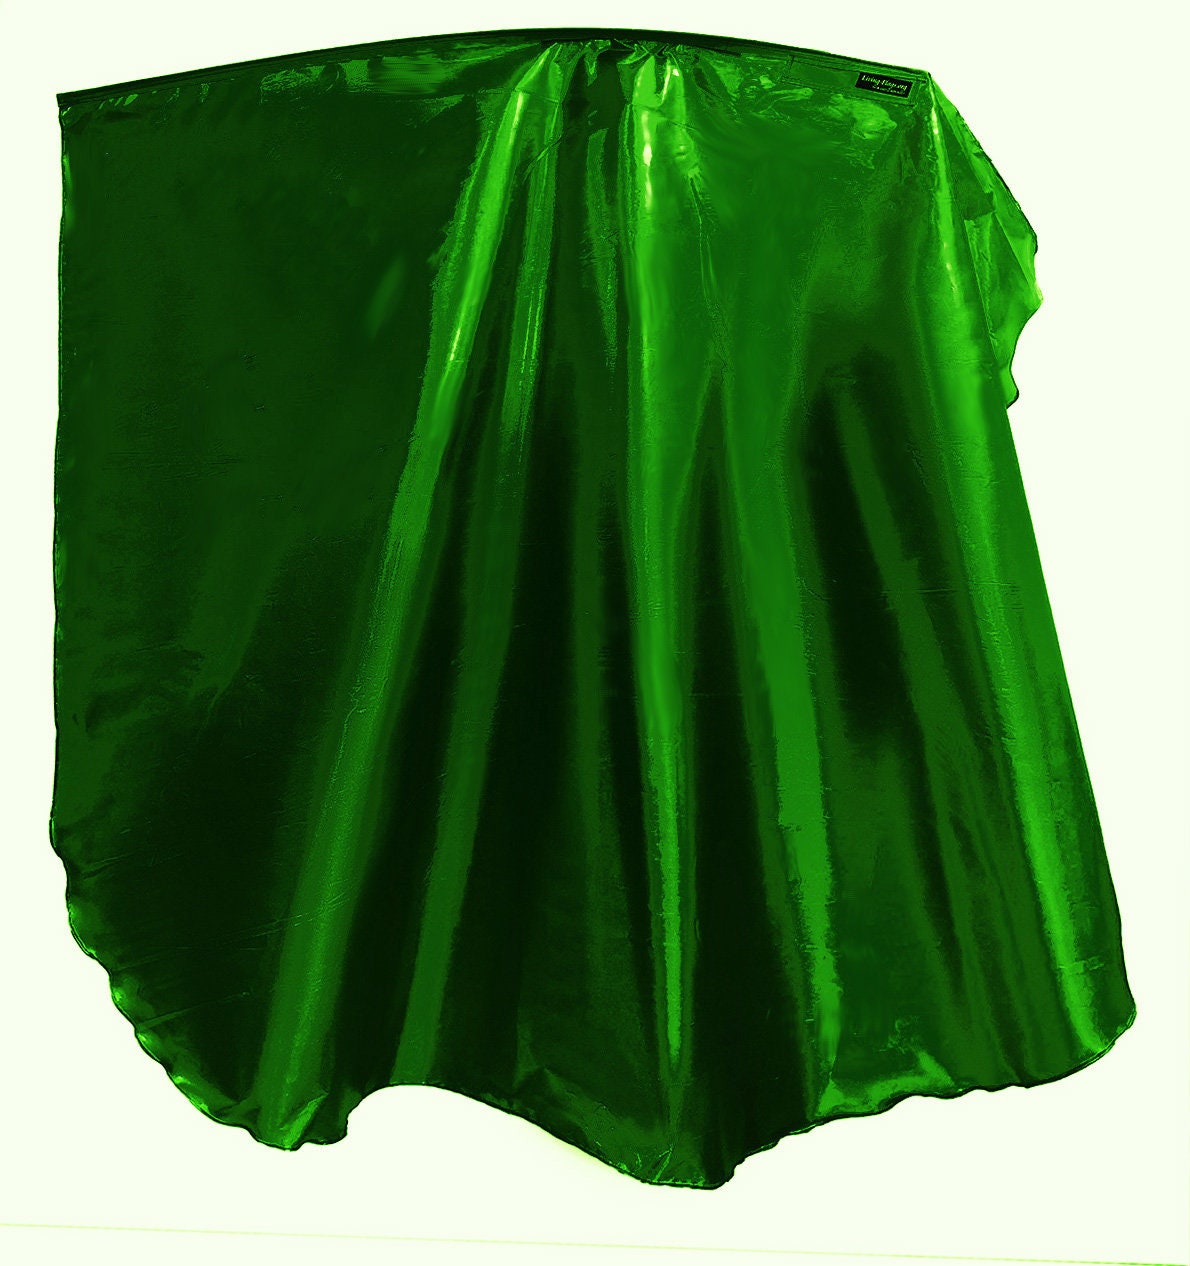 WXLL-Quill - Bandera de ala verde esmeralda de metal líquido - Varilla flexible de 40"